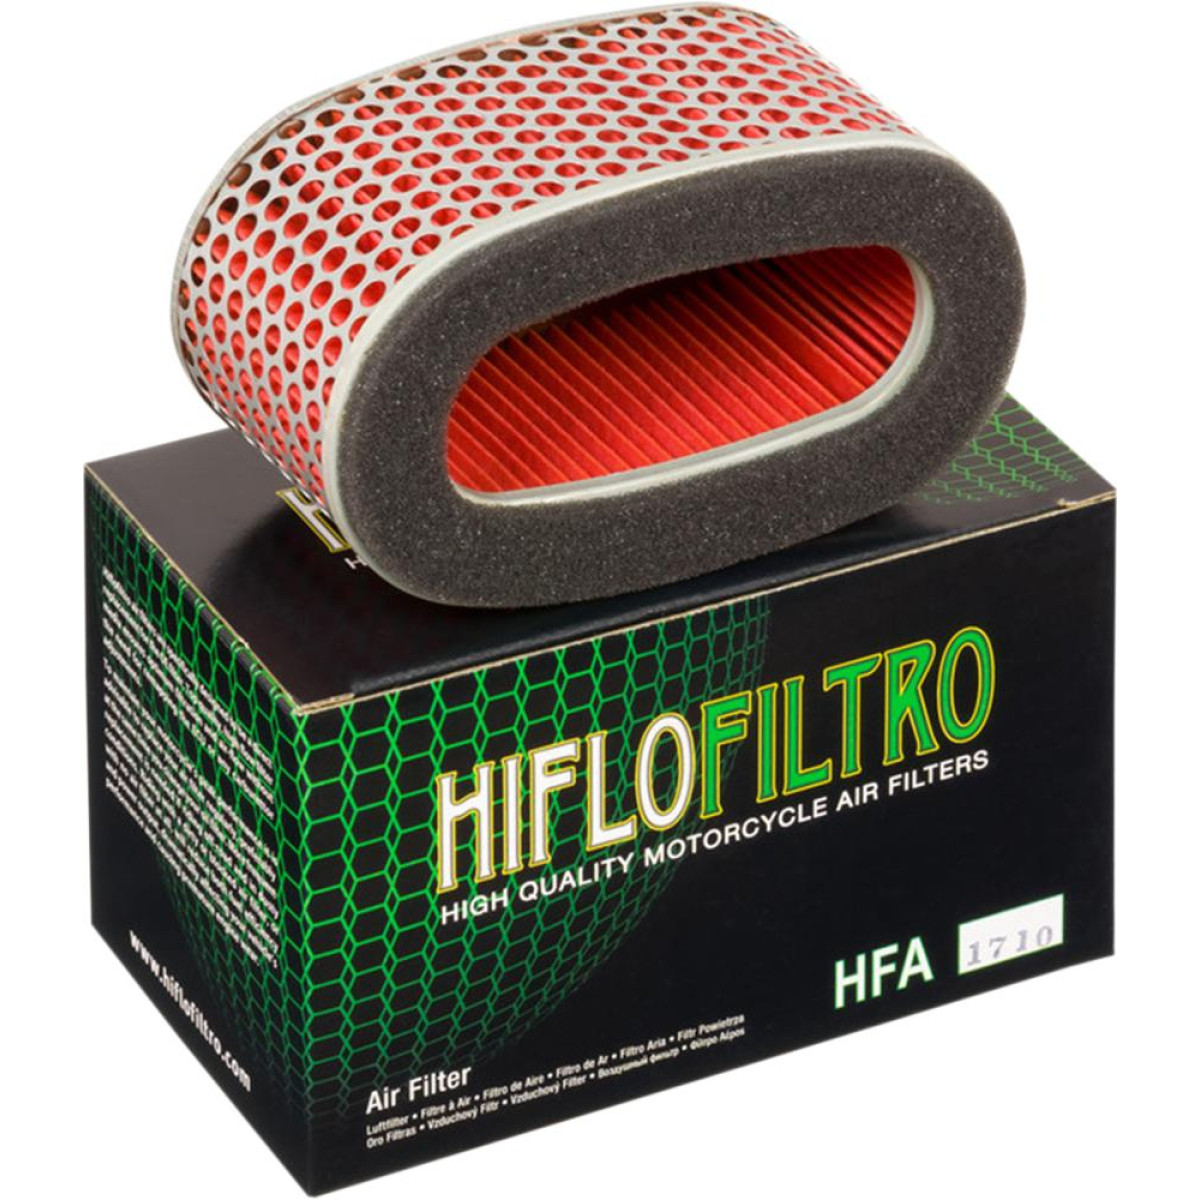 FILTRO AIRE HIFLOFILTRO HFA1710 HONDA VT750 97/07